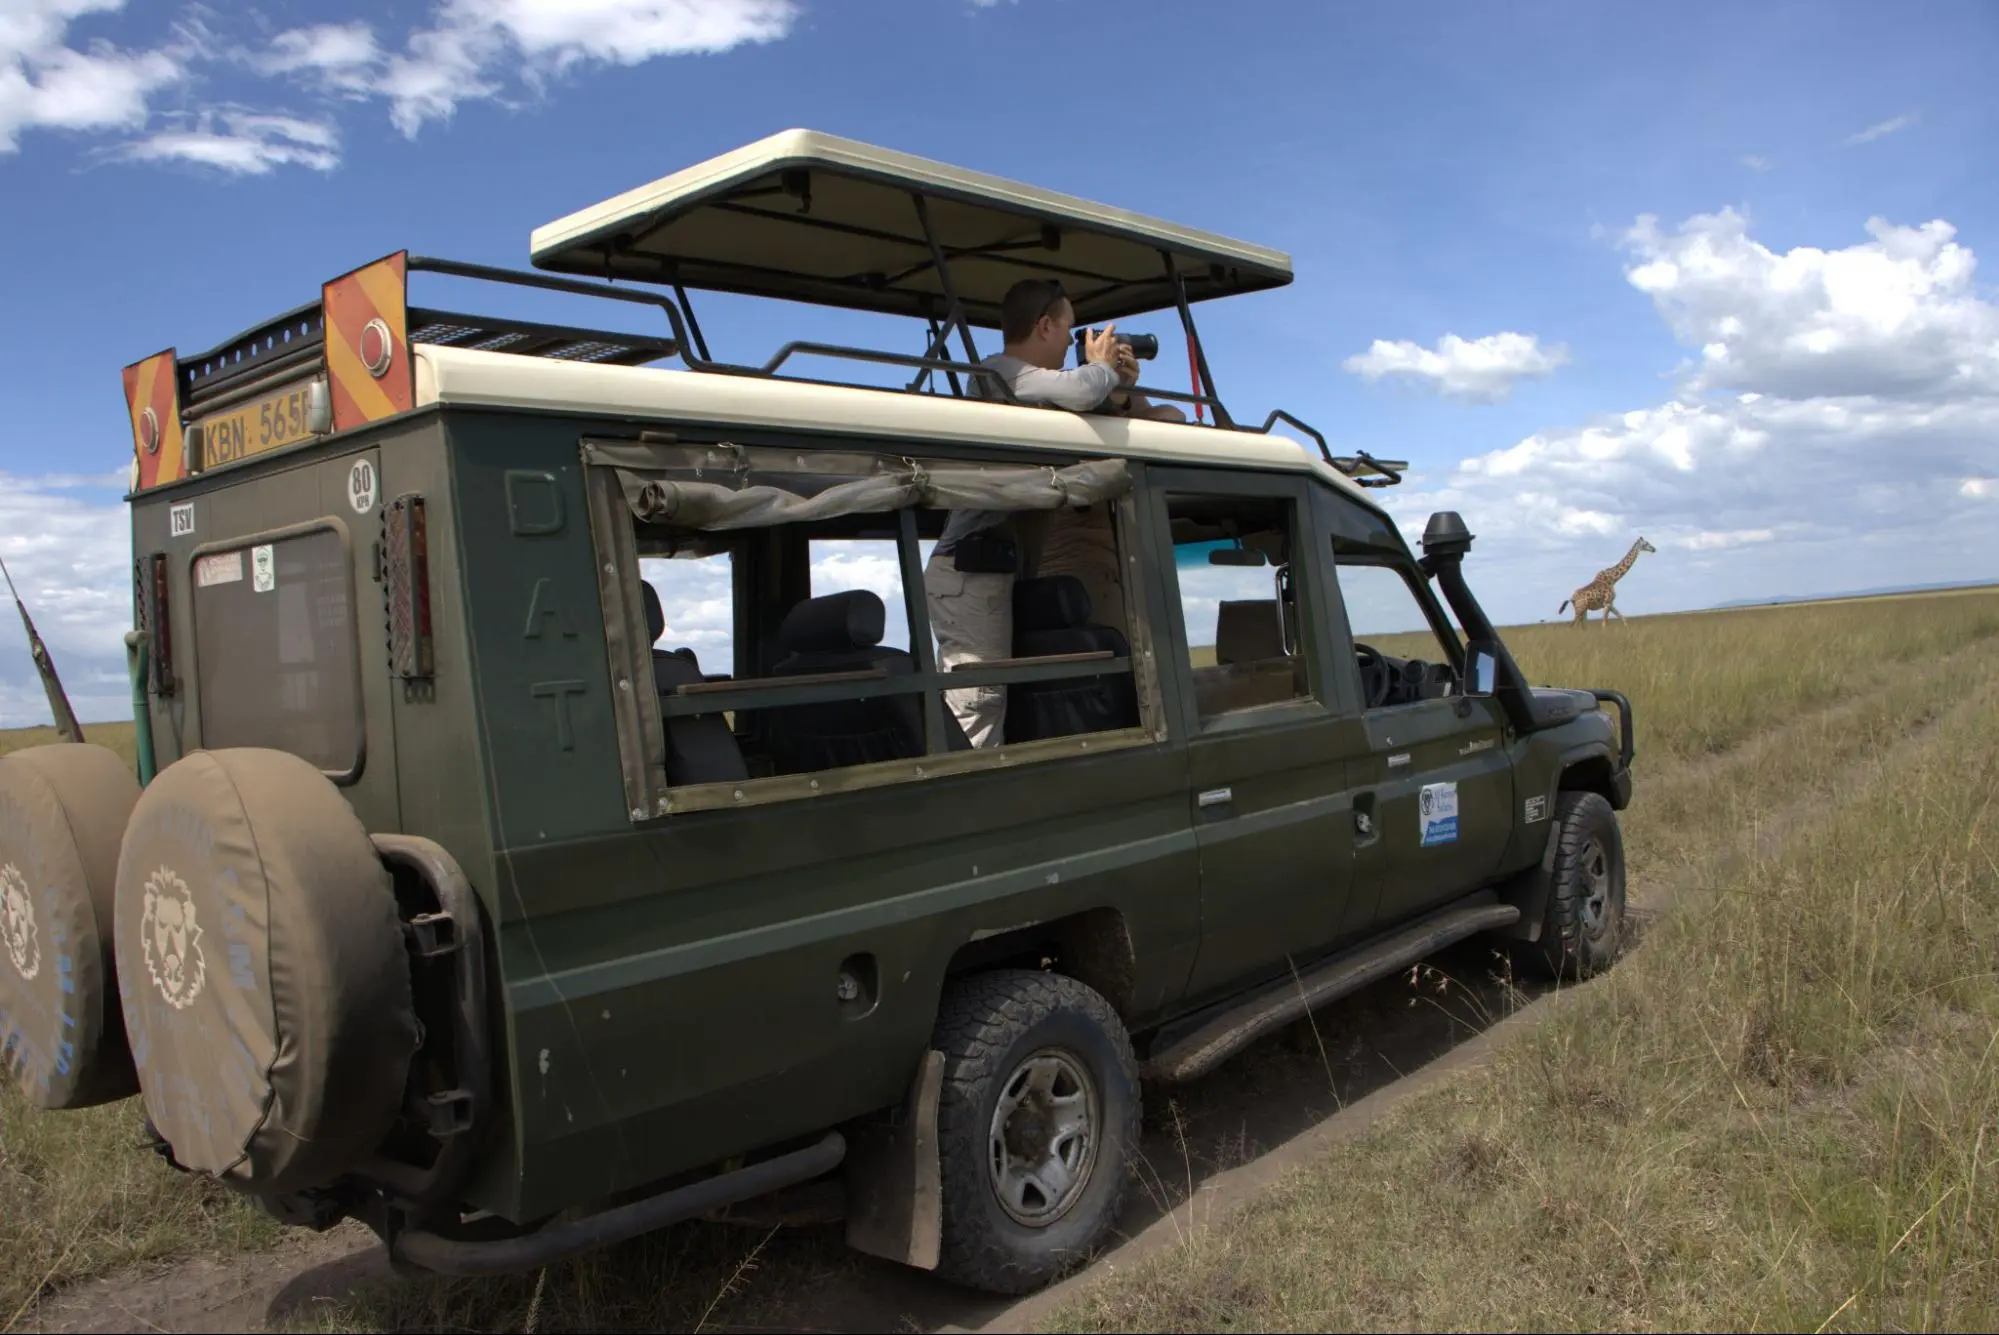 Kenya Safari Packages - Guests on Safari packages in Kenya.